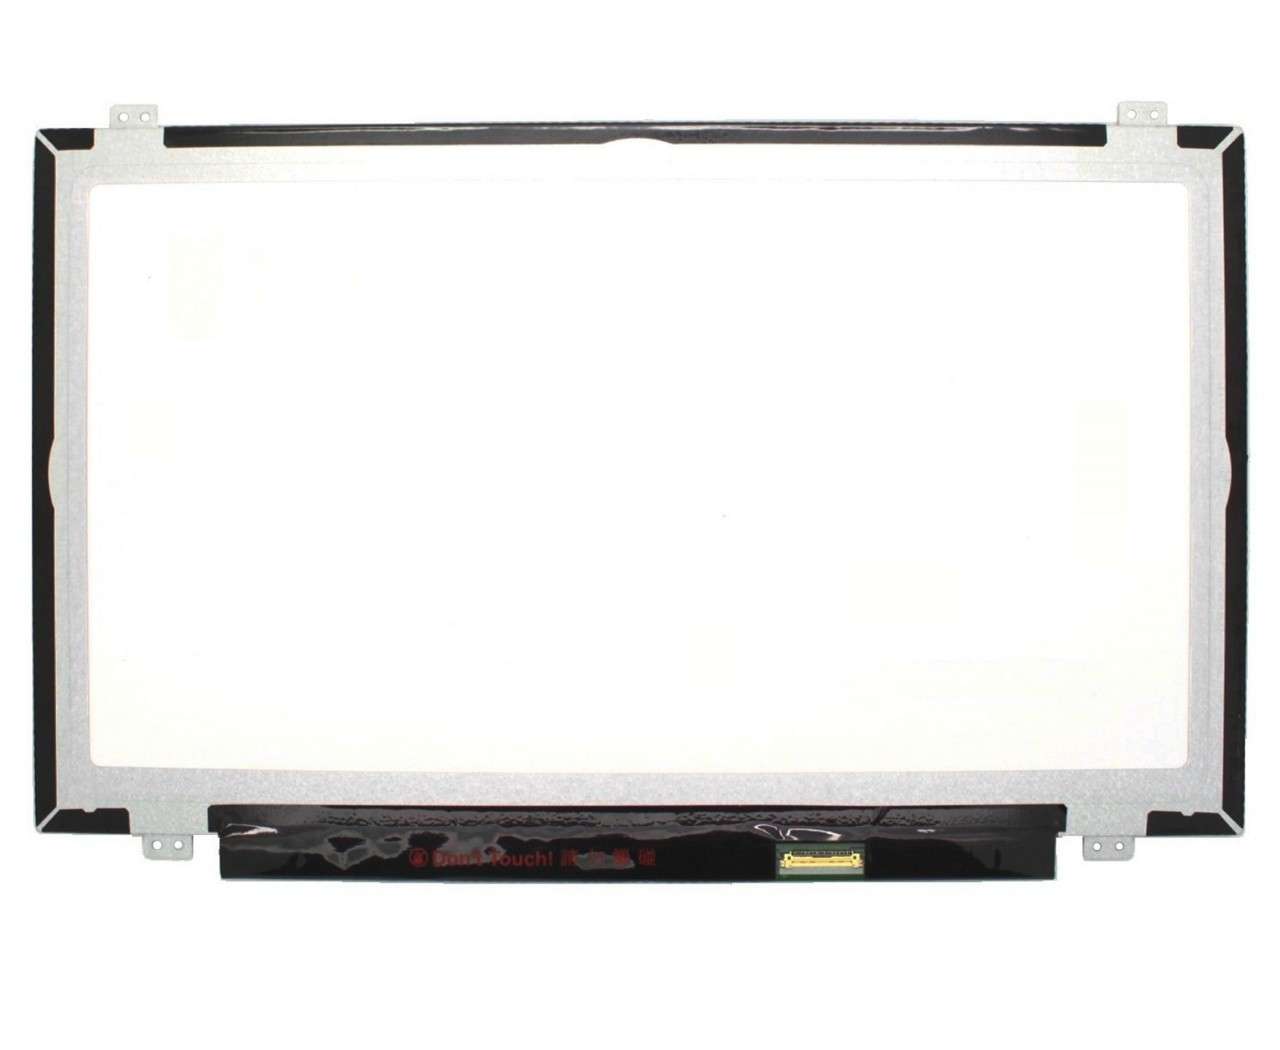 Display laptop BOE N140HGE-EAA REV C5 Ecran 14.0 1920×1080 30 pini eDP imagine 2021 BOE